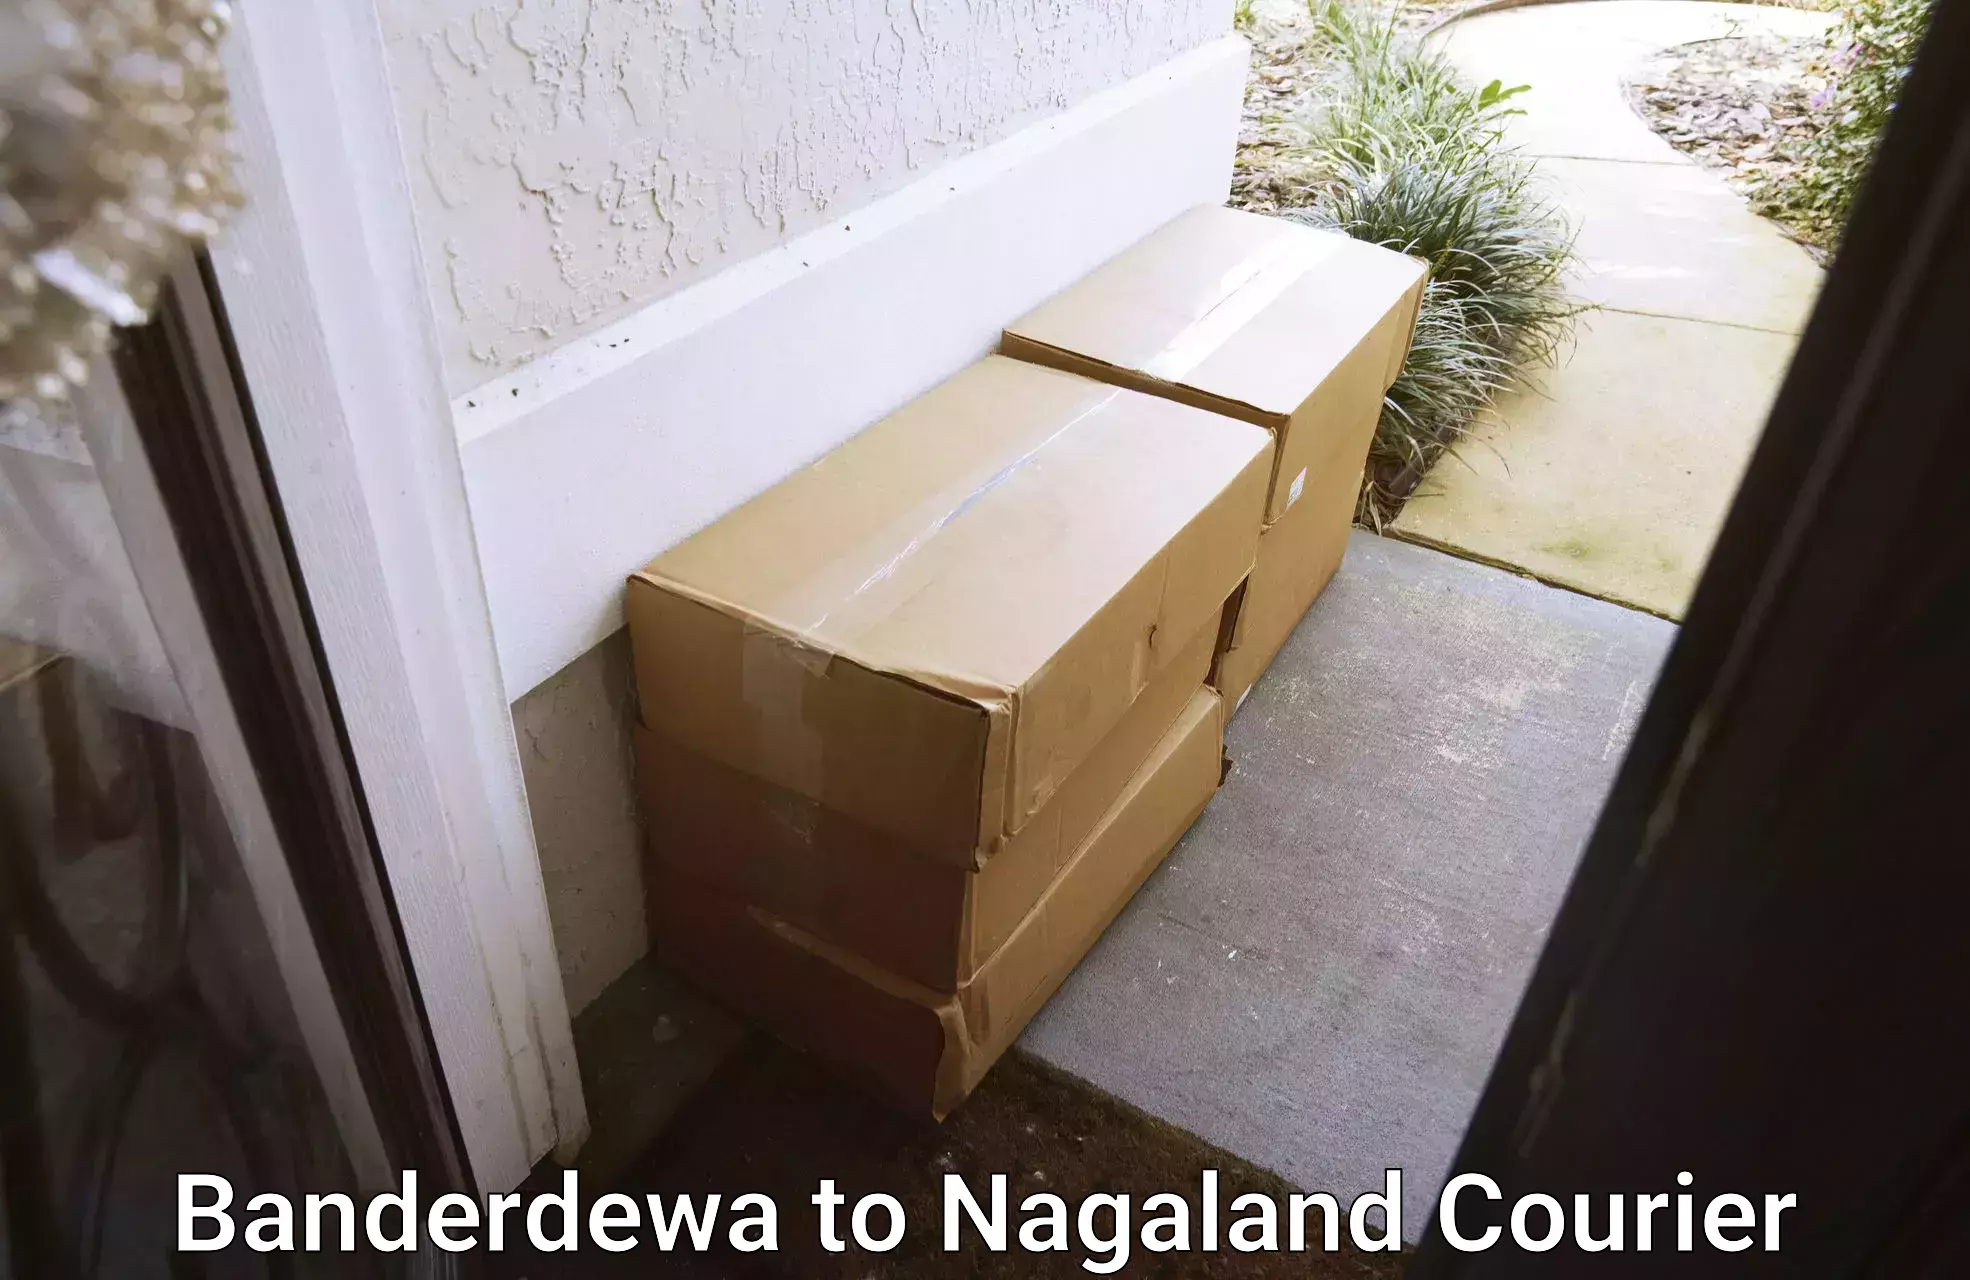 Express mail solutions Banderdewa to Nagaland